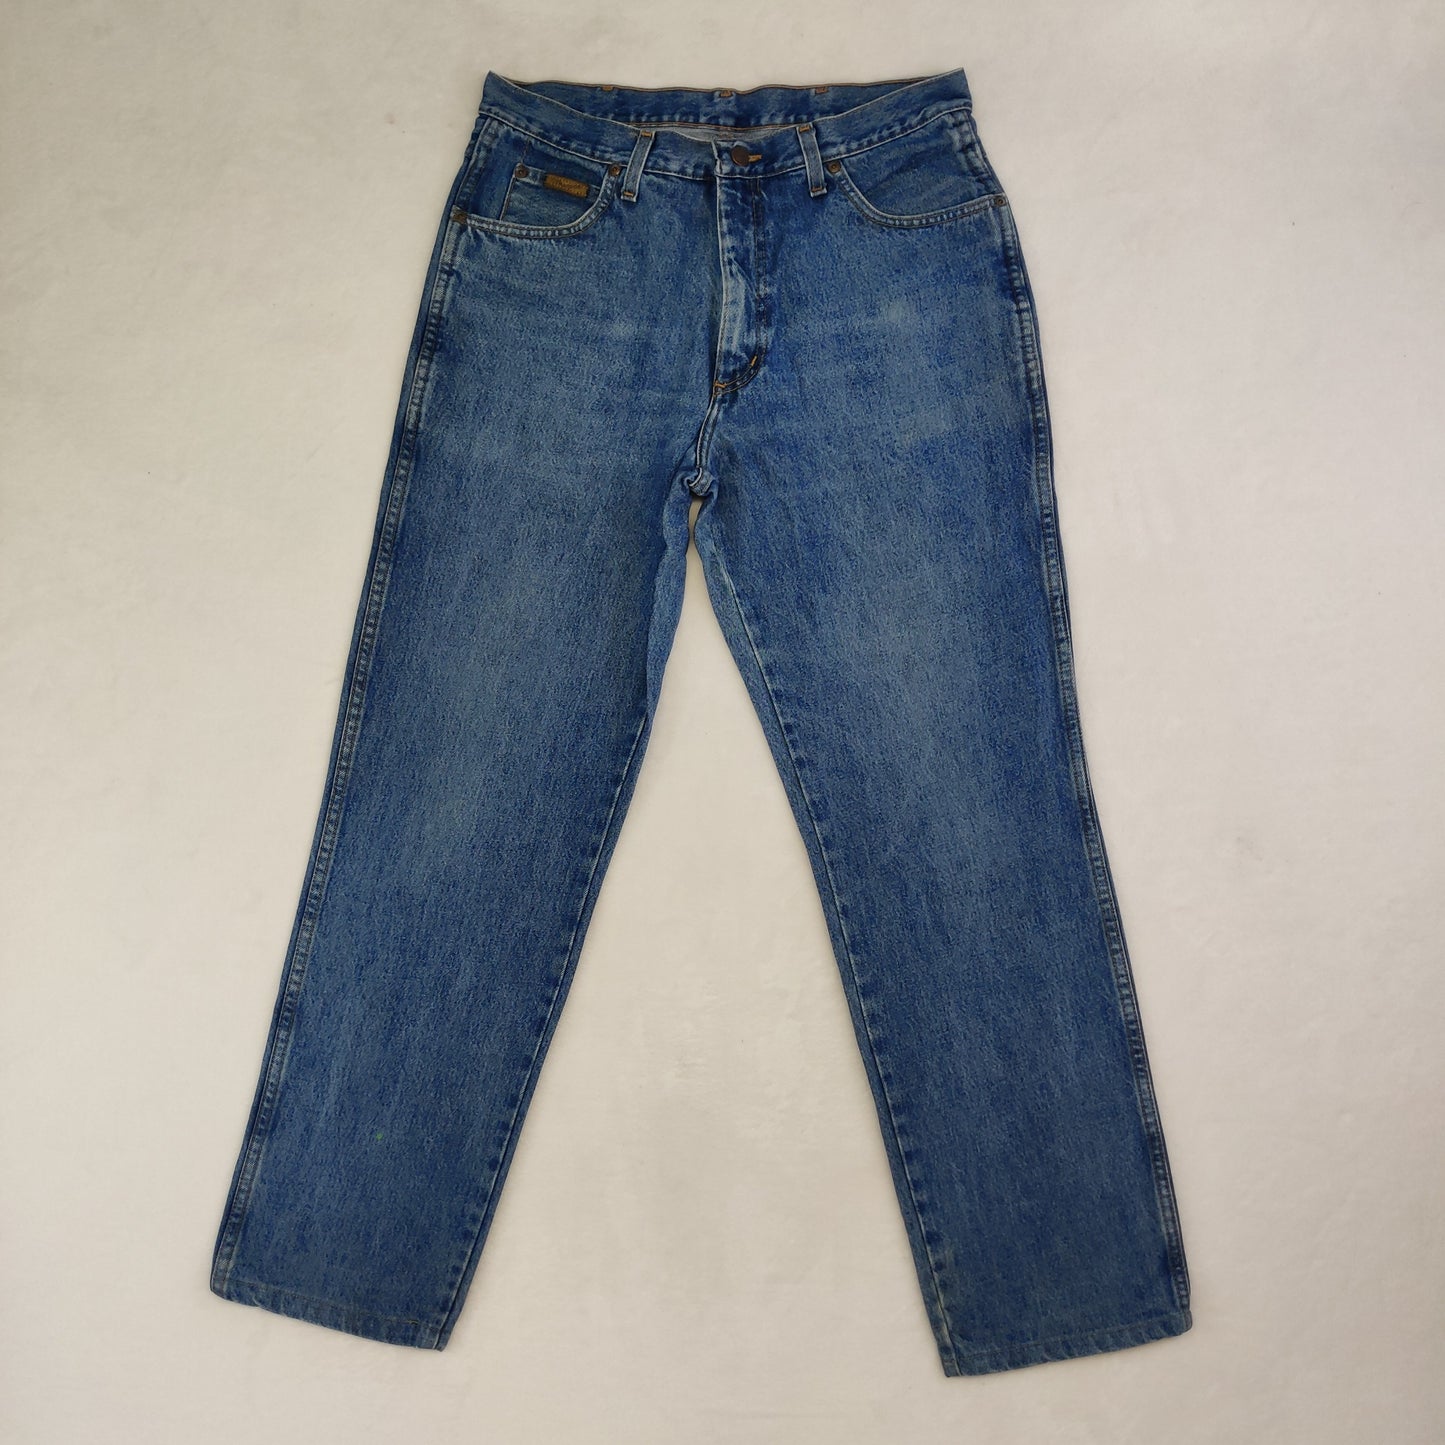 Wrangler OHIO Blue Regular Straight Fit Jeans Men W34/L32